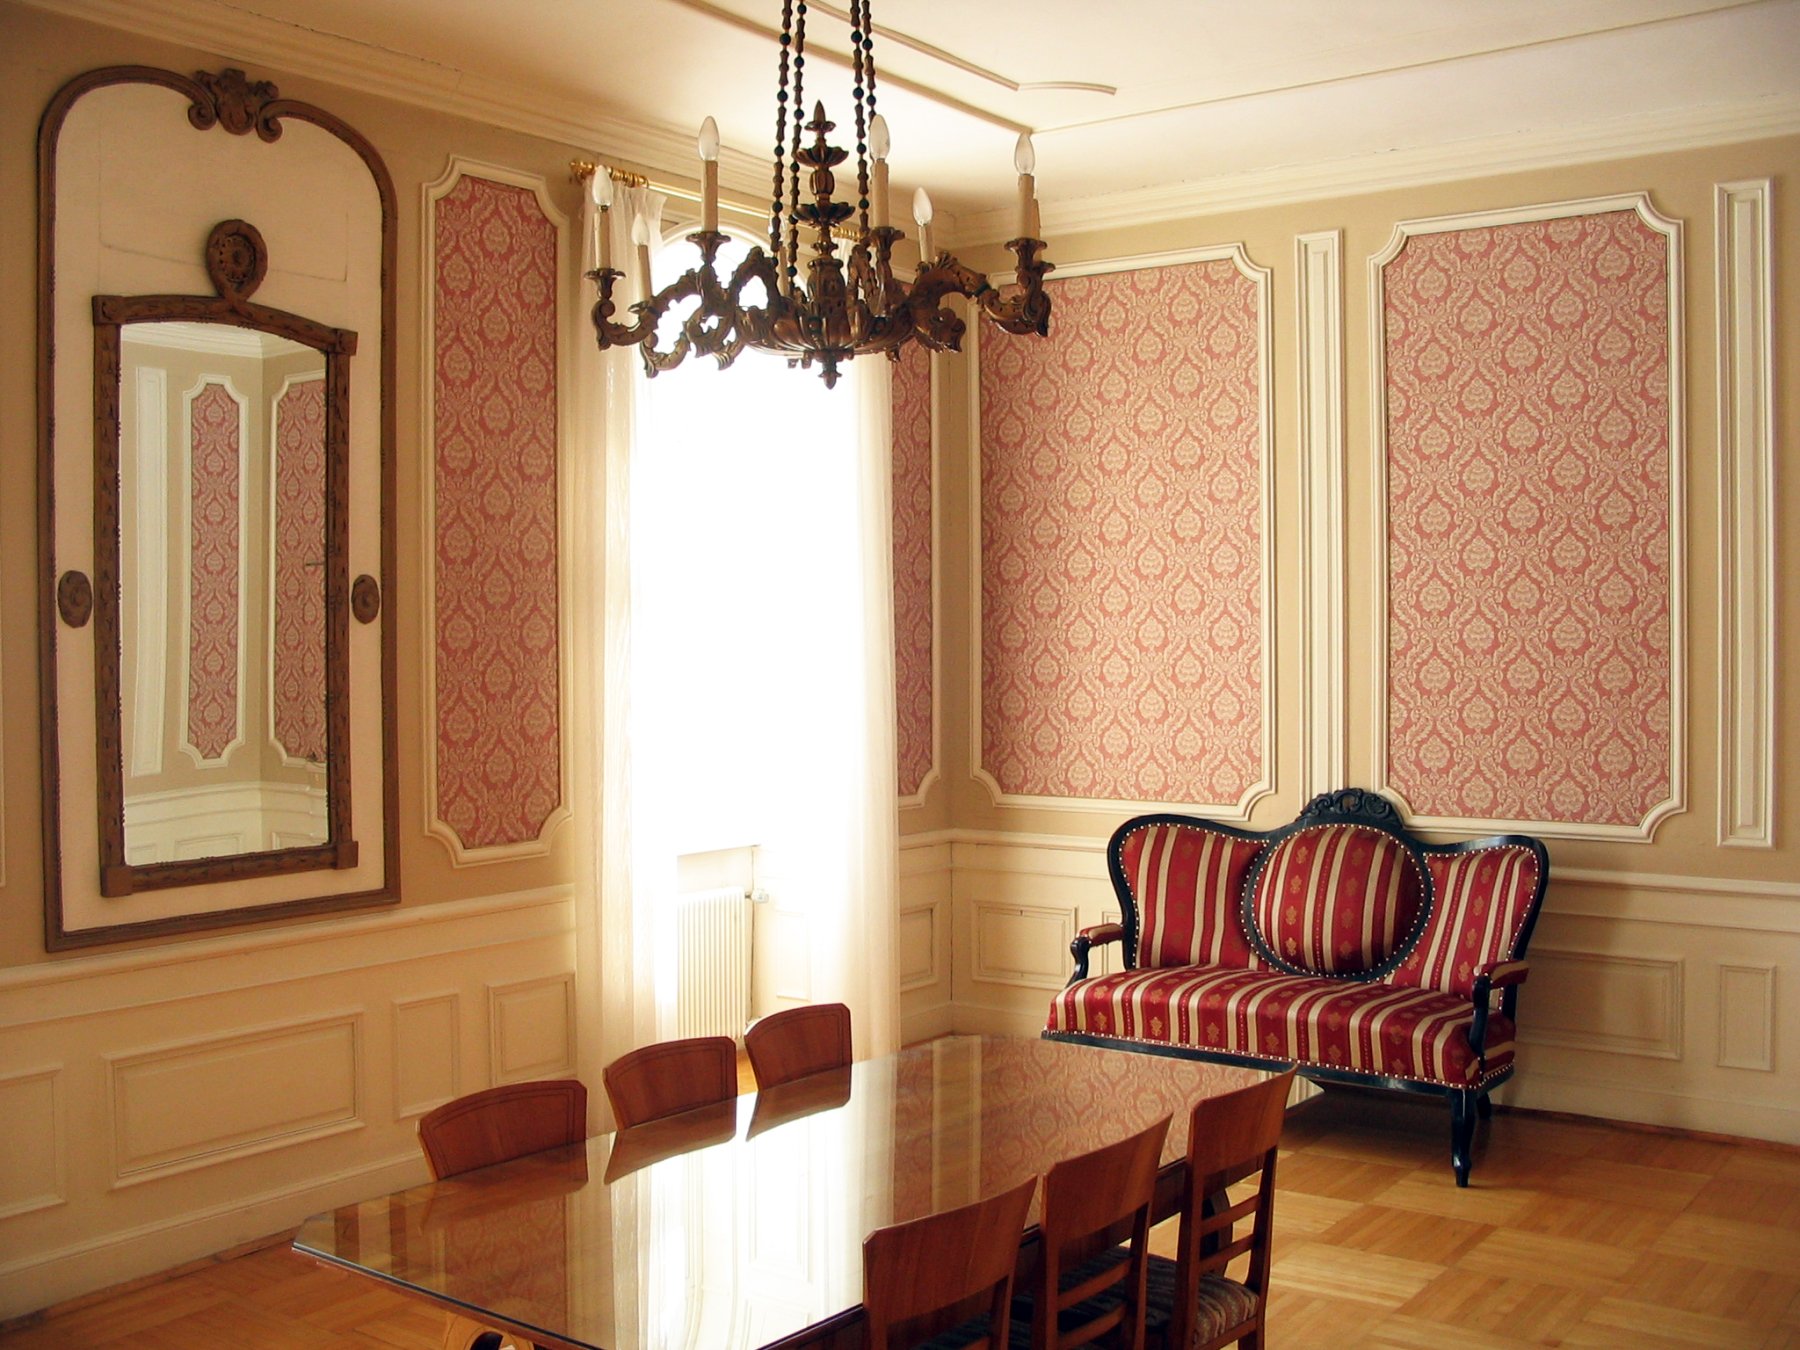 Raum mit Stuckarbeiten und rosa Wandtapete, im Hintergrund steht eine antike Couch